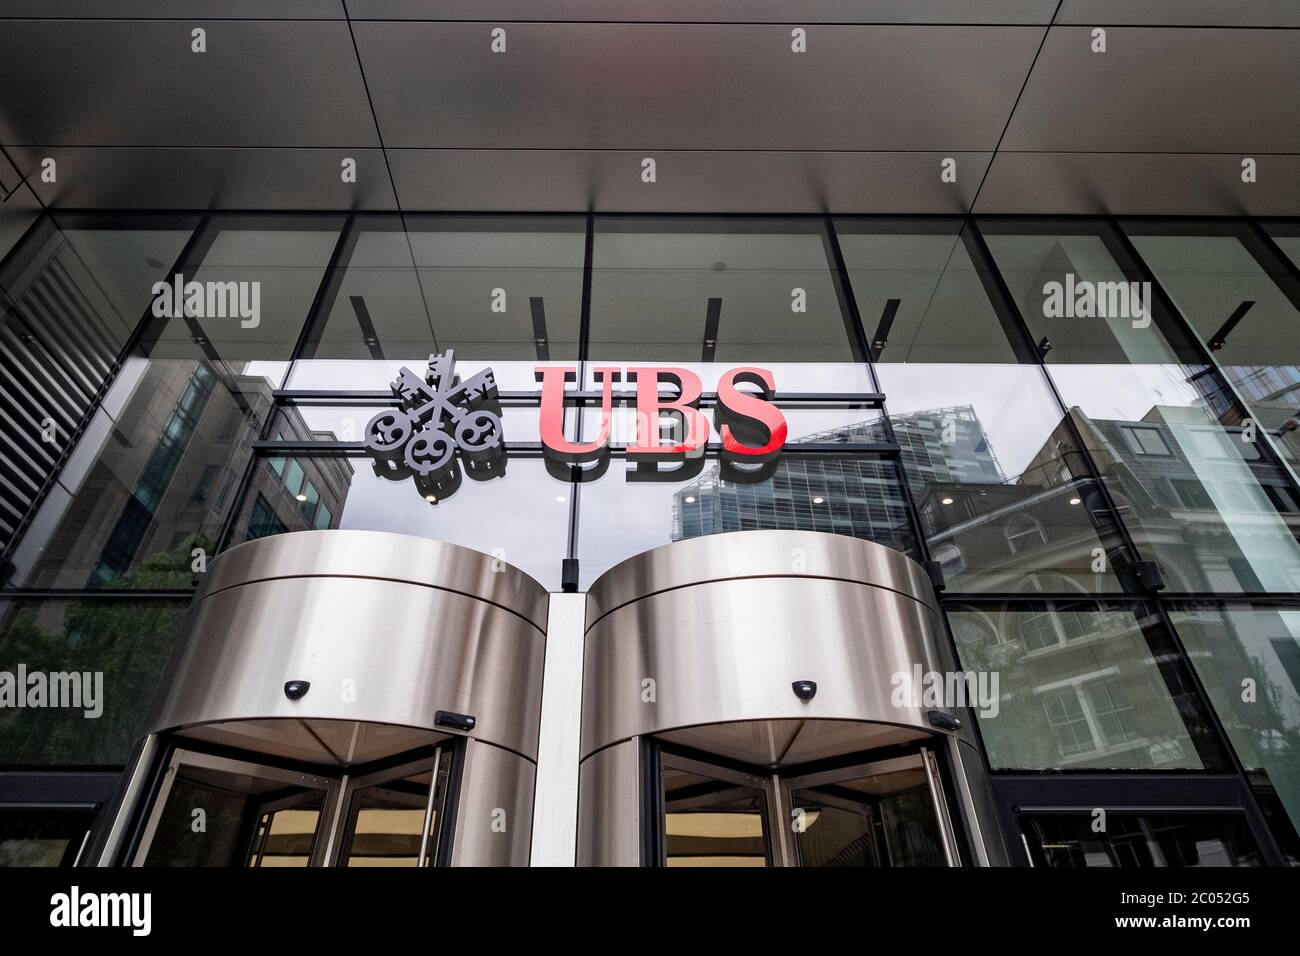 LONDRES- JUIN 2020: UBS Group AG dans la ville de Londres, une banque multinationale suisse d'investissement et de services financiers Banque D'Images